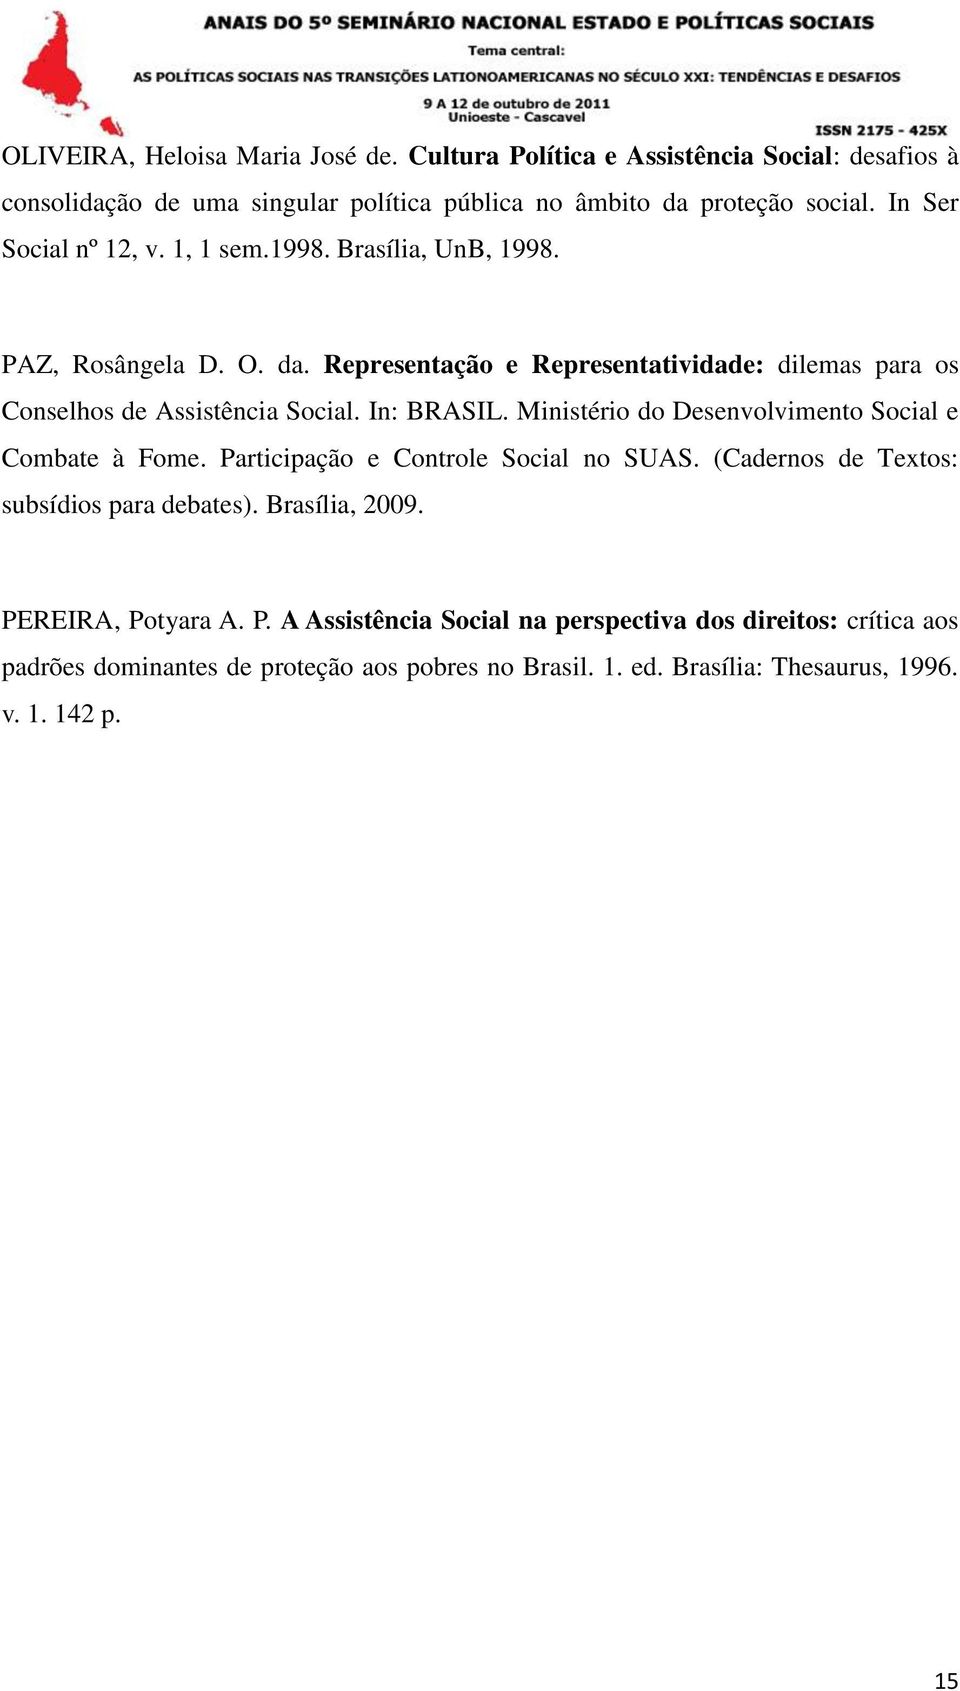 In: BRASIL. Ministério do Desenvolvimento Social e Combate à Fome. Participação e Controle Social no SUAS. (Cadernos de Textos: subsídios para debates). Brasília, 2009.